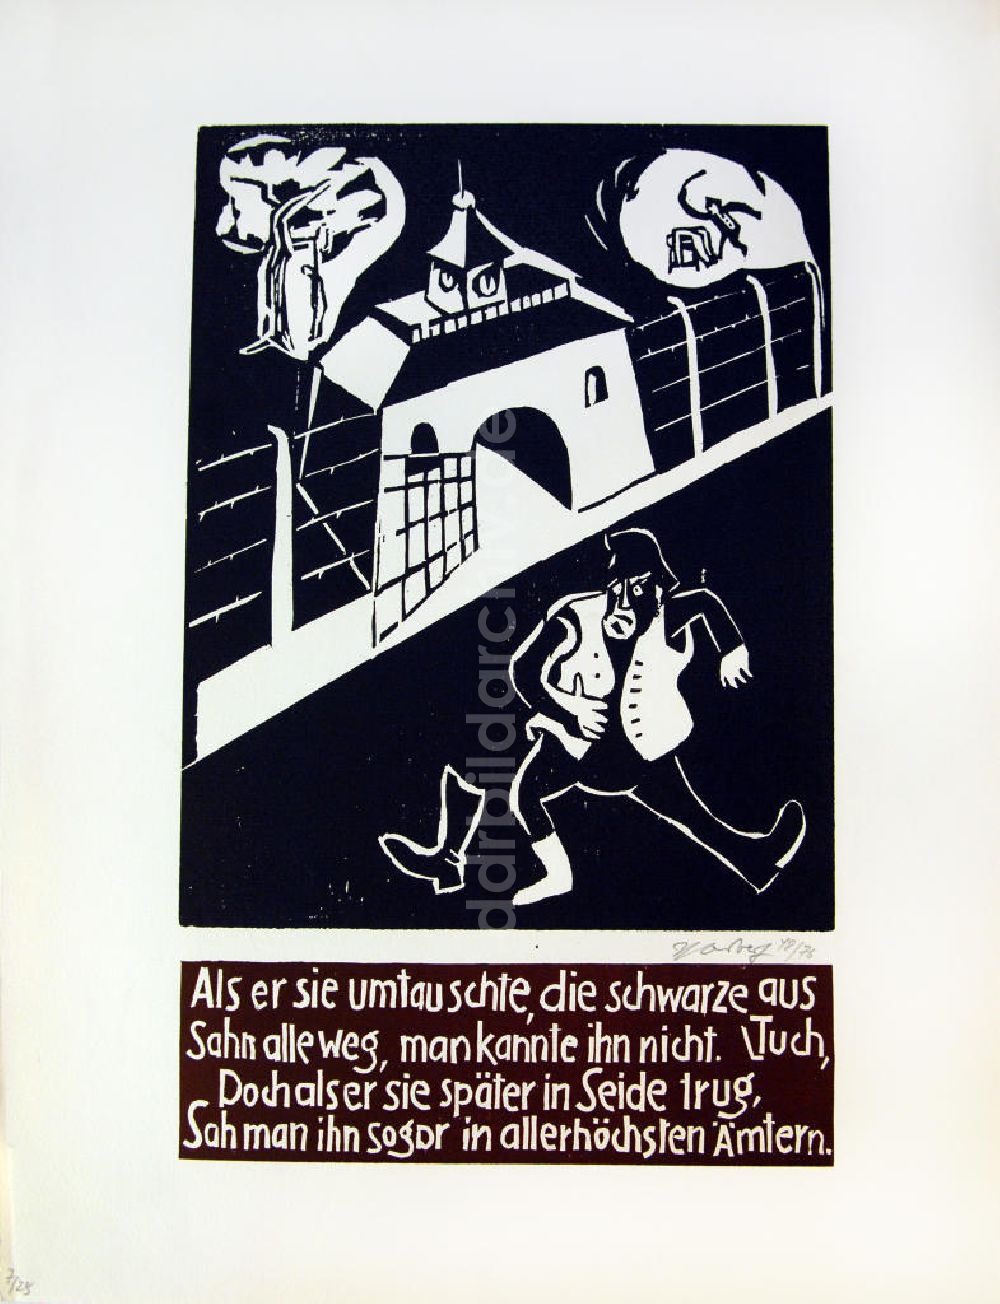 Berlin: Grafik von Herbert Sandberg Die weiße Weste aus dem Jahr 1950